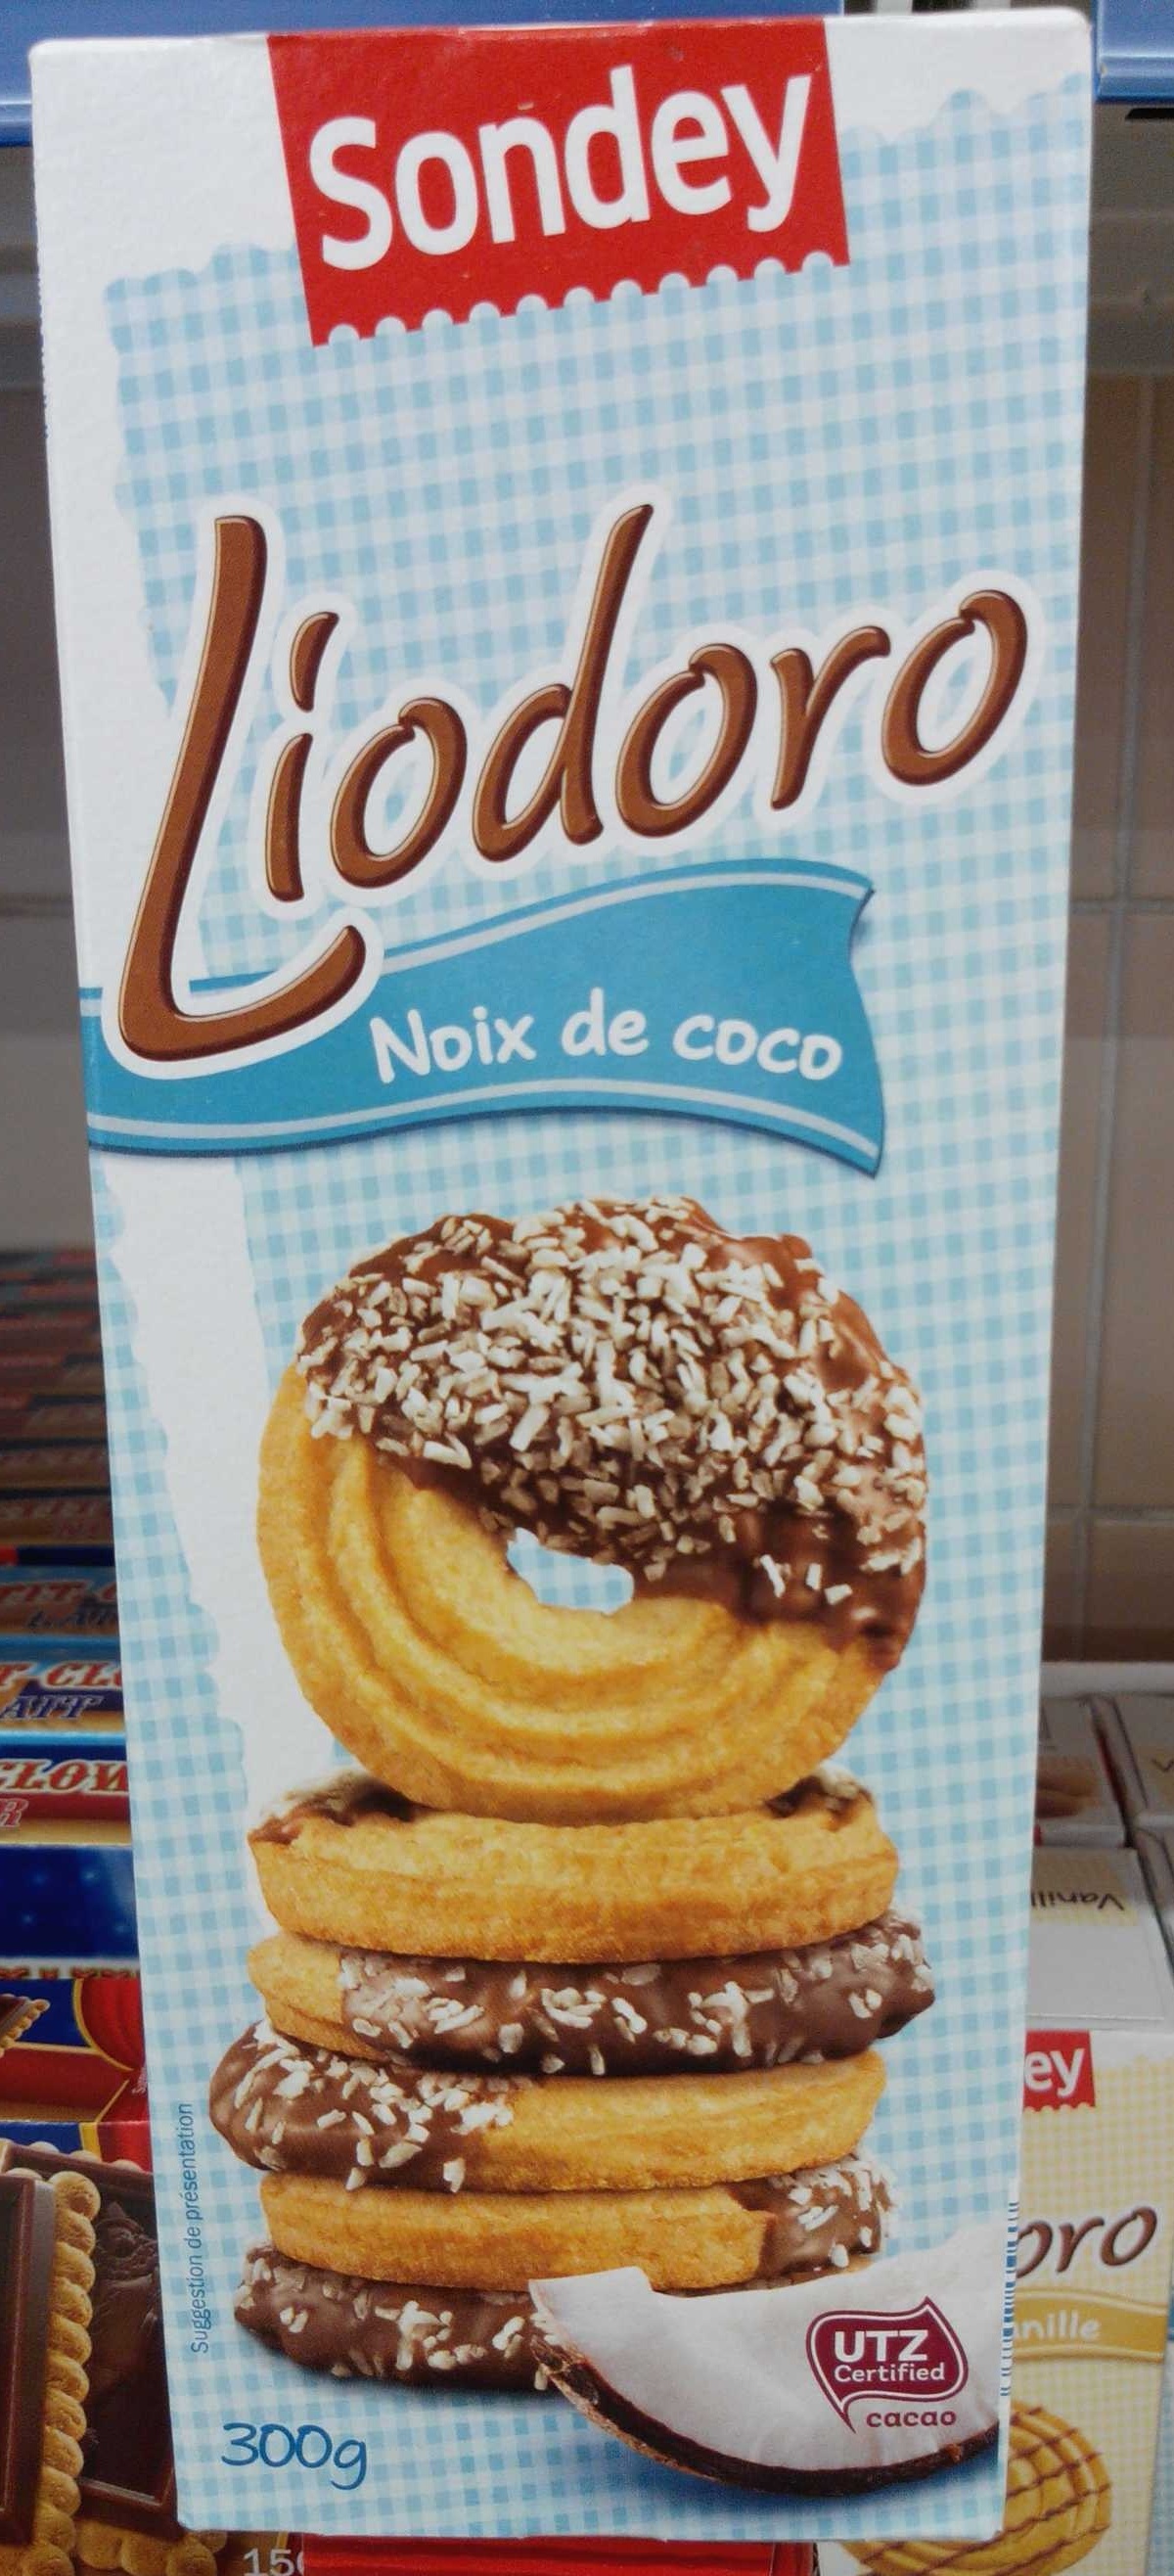 Liodoro noix de coco - Product - fr